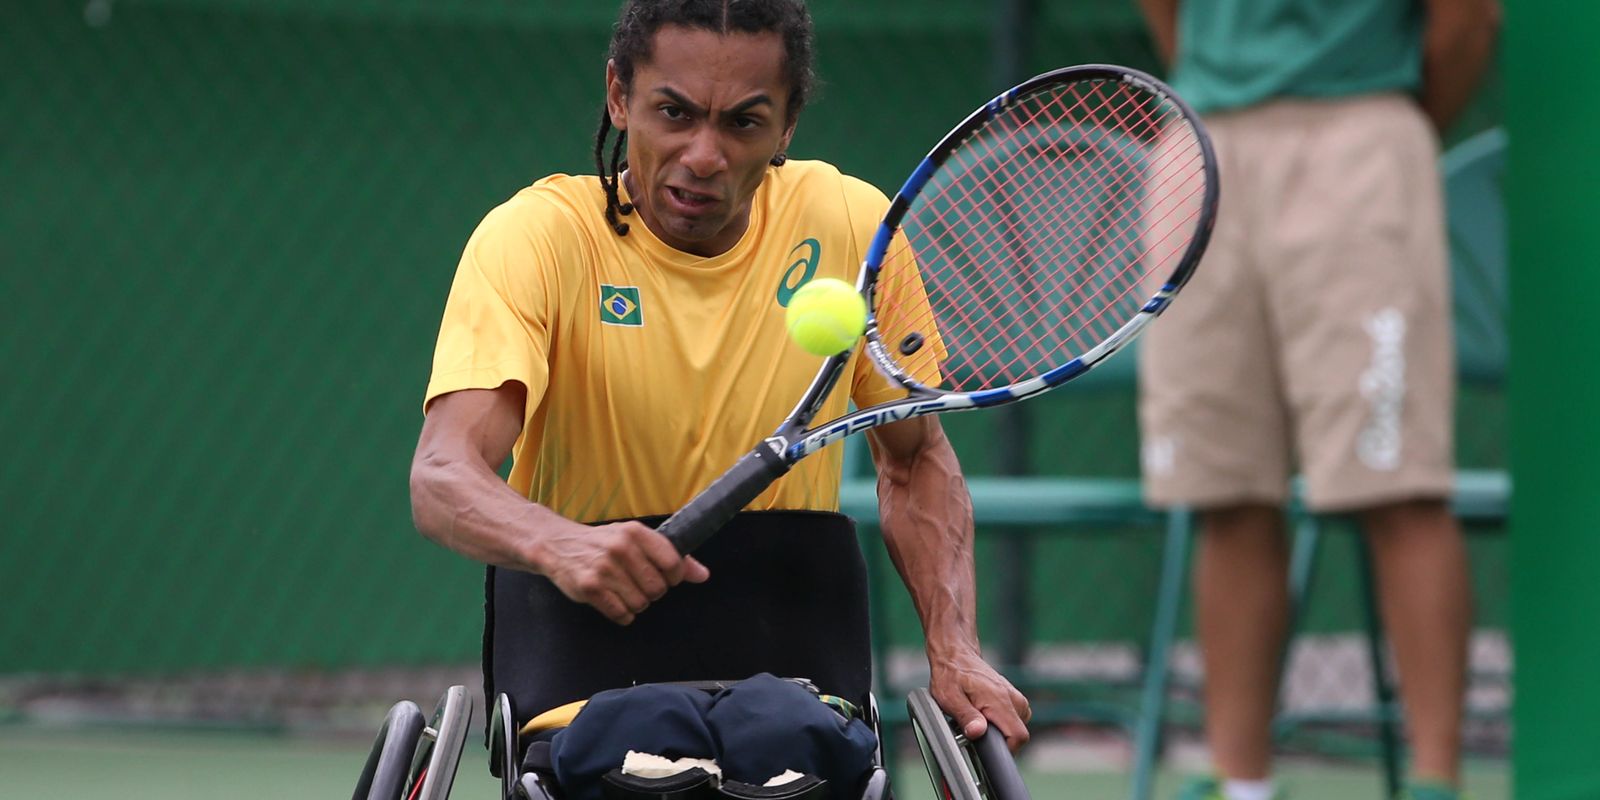 Brasília recebe torneio internacional de tênis em cadeira de rodas